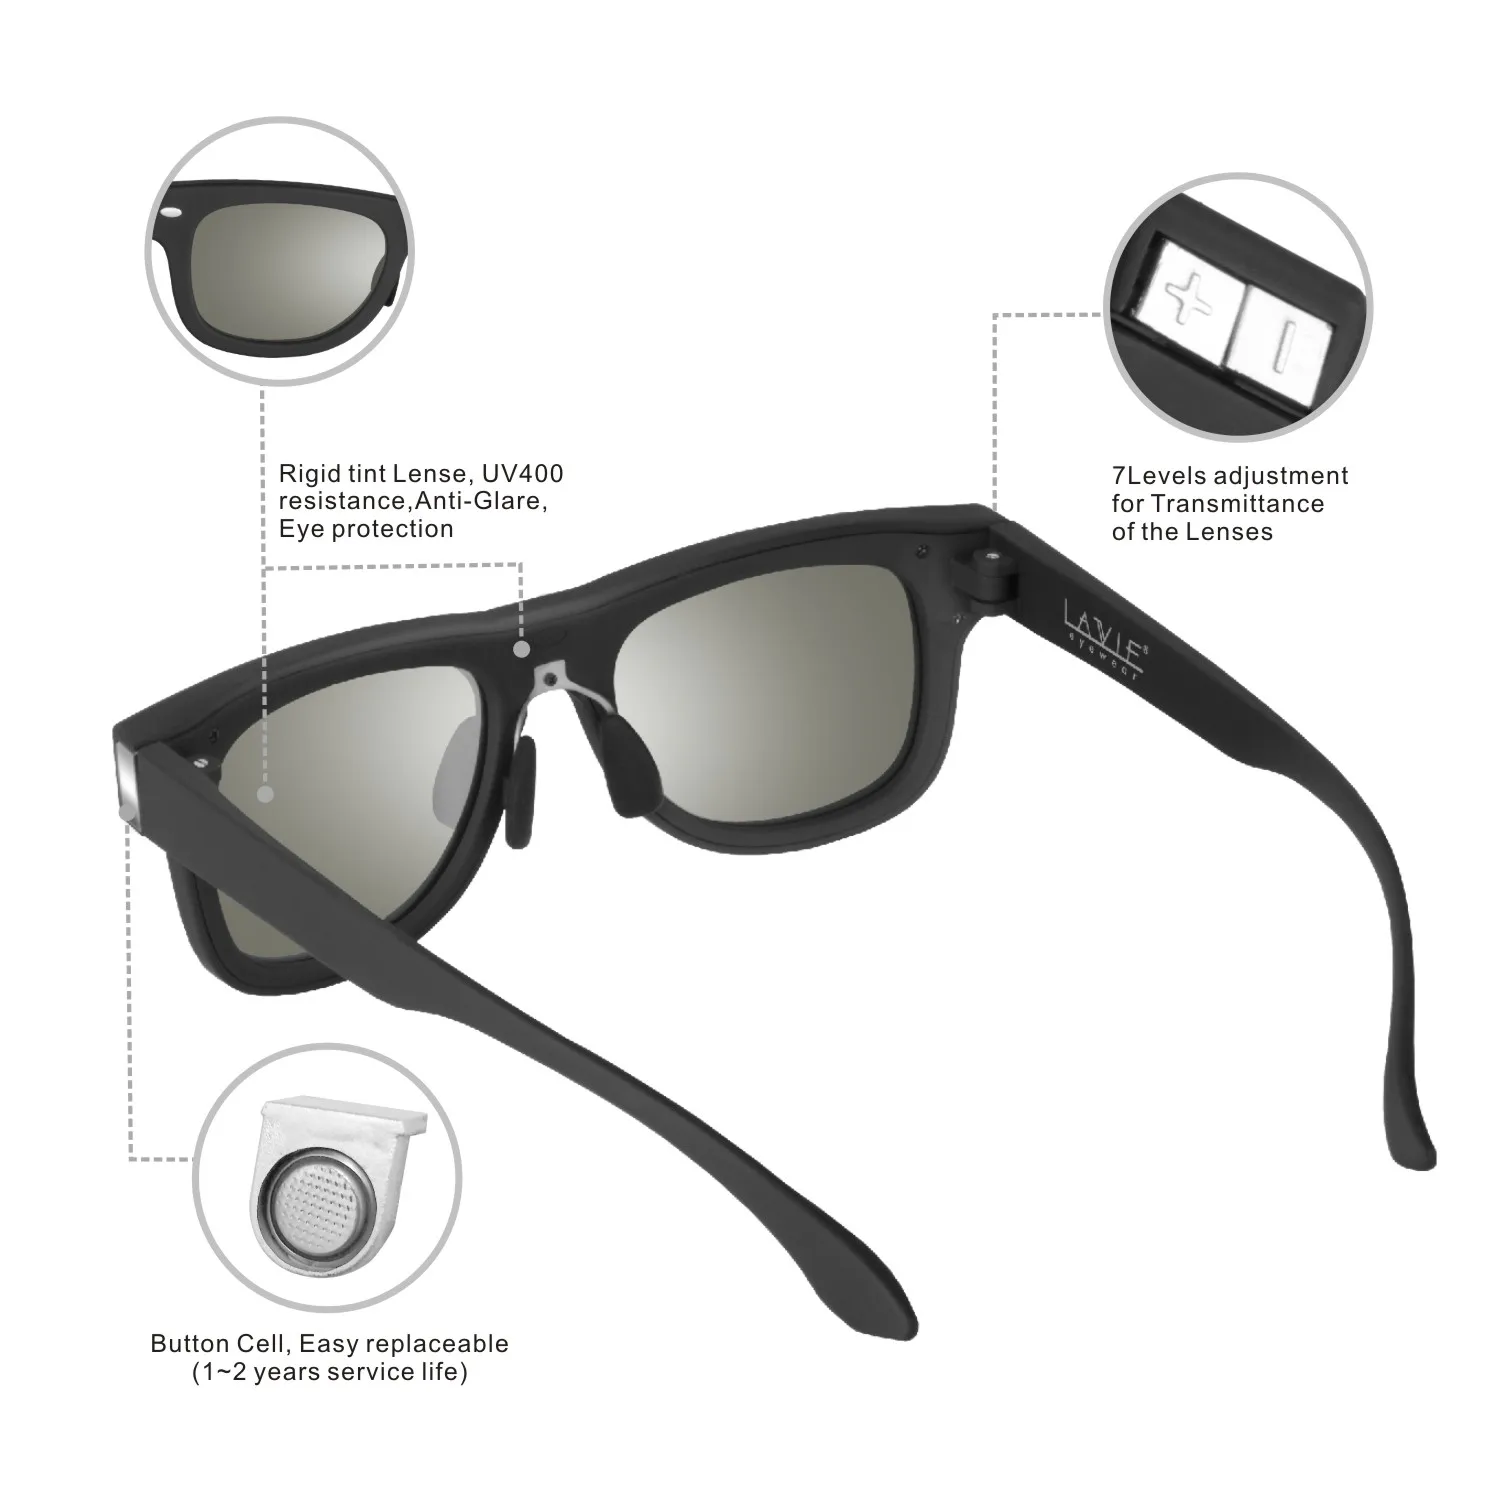 Lcd затемняющие солнцезащитные очки, дизайн, солнцезащитные очки, lcd поляризованные линзы, электронные регулируемые темные жидкокристаллические линзы